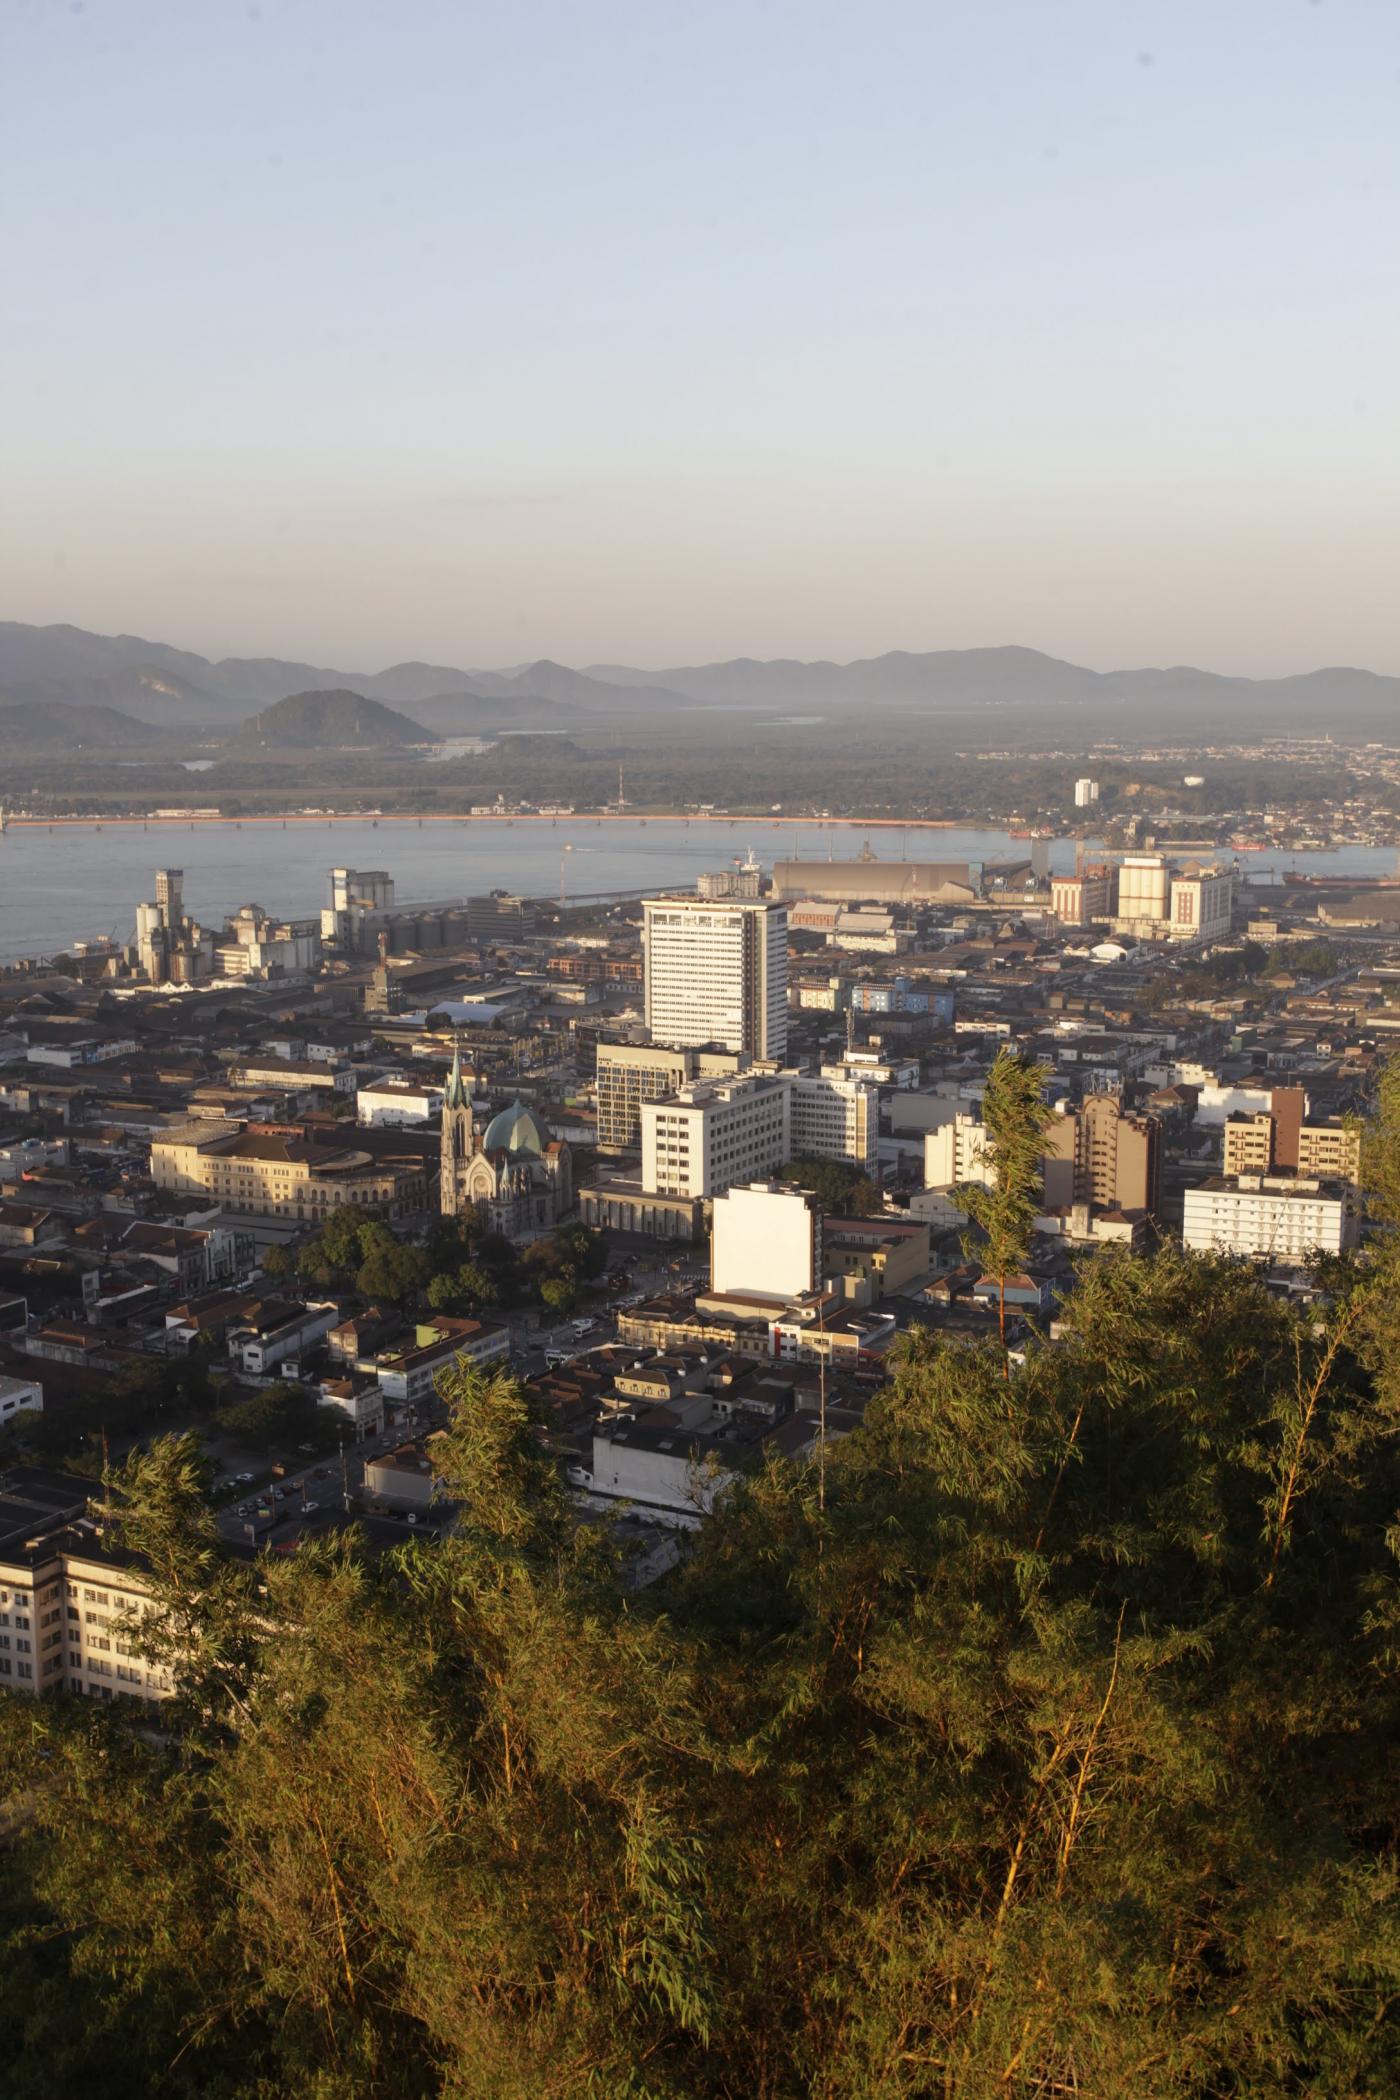 Vista geral do centro de Santos a partir do alto do Monte Serrat. #Pracegover